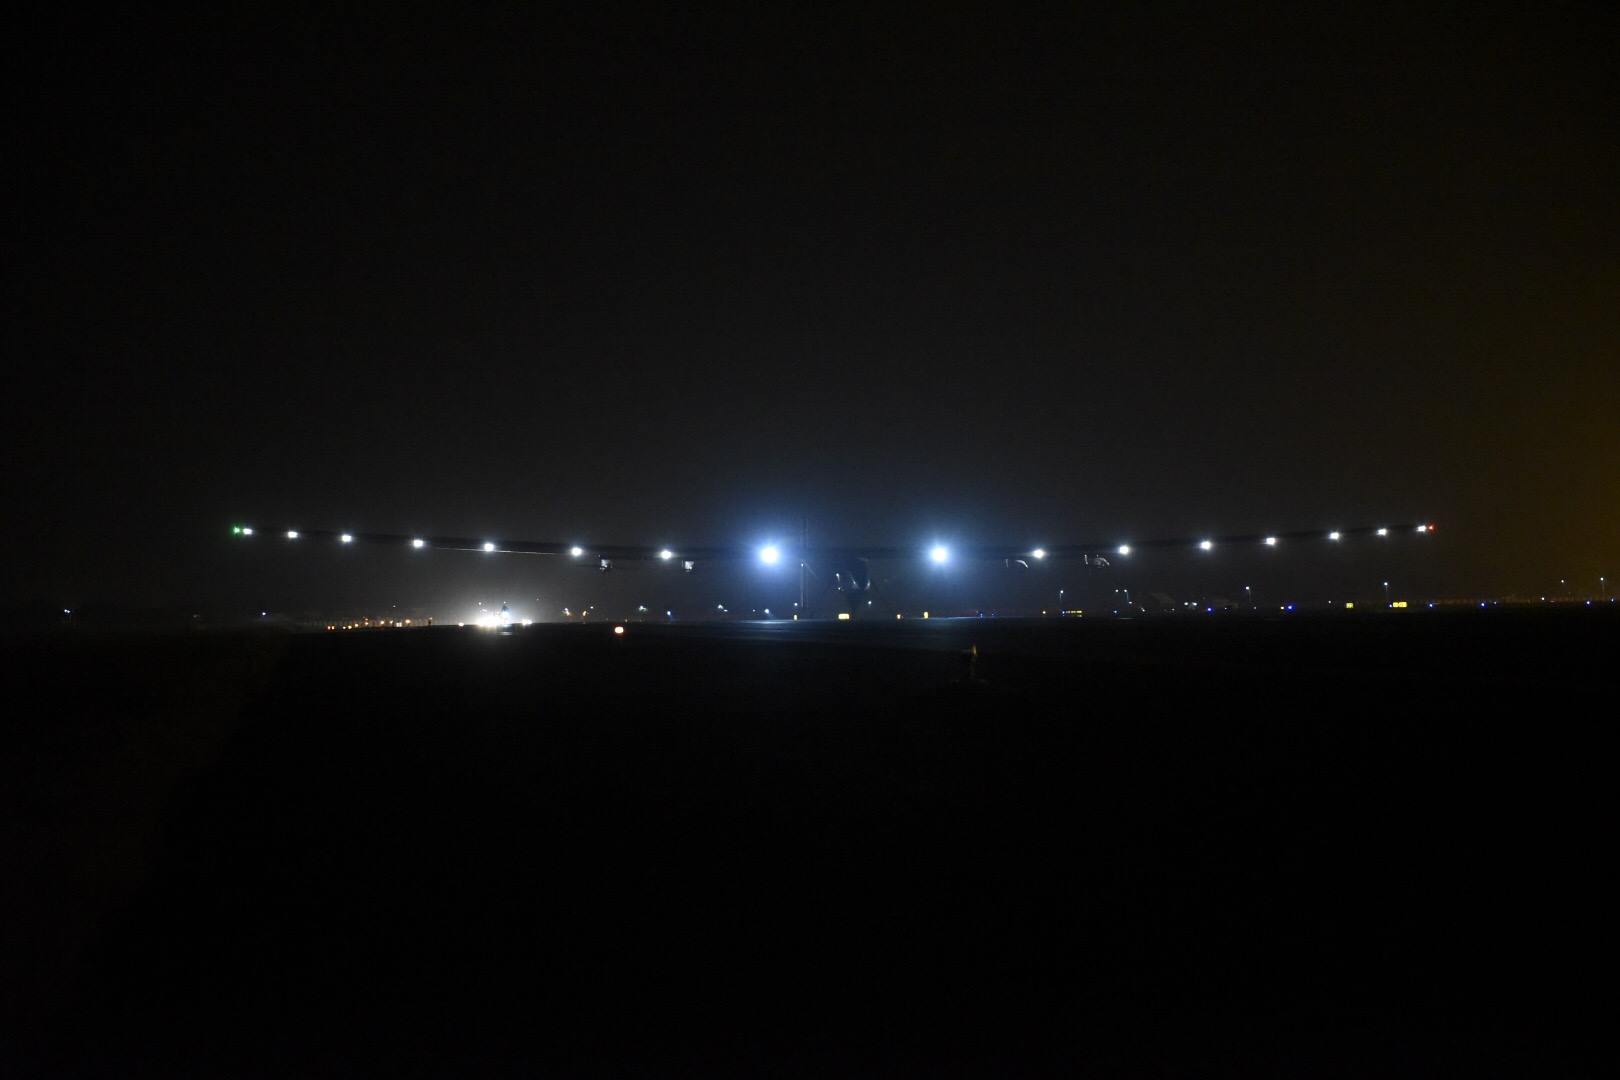 À 23 h 25 (17 h 55 TU), le mardi 10 mars 2015, Bertrand Piccard a atterri avec l'avion SI2 à Ahmedabad. Il avait décollé de Mascate le matin. Le vol a duré un peu moins de 16 heures. © Solar Impulse 